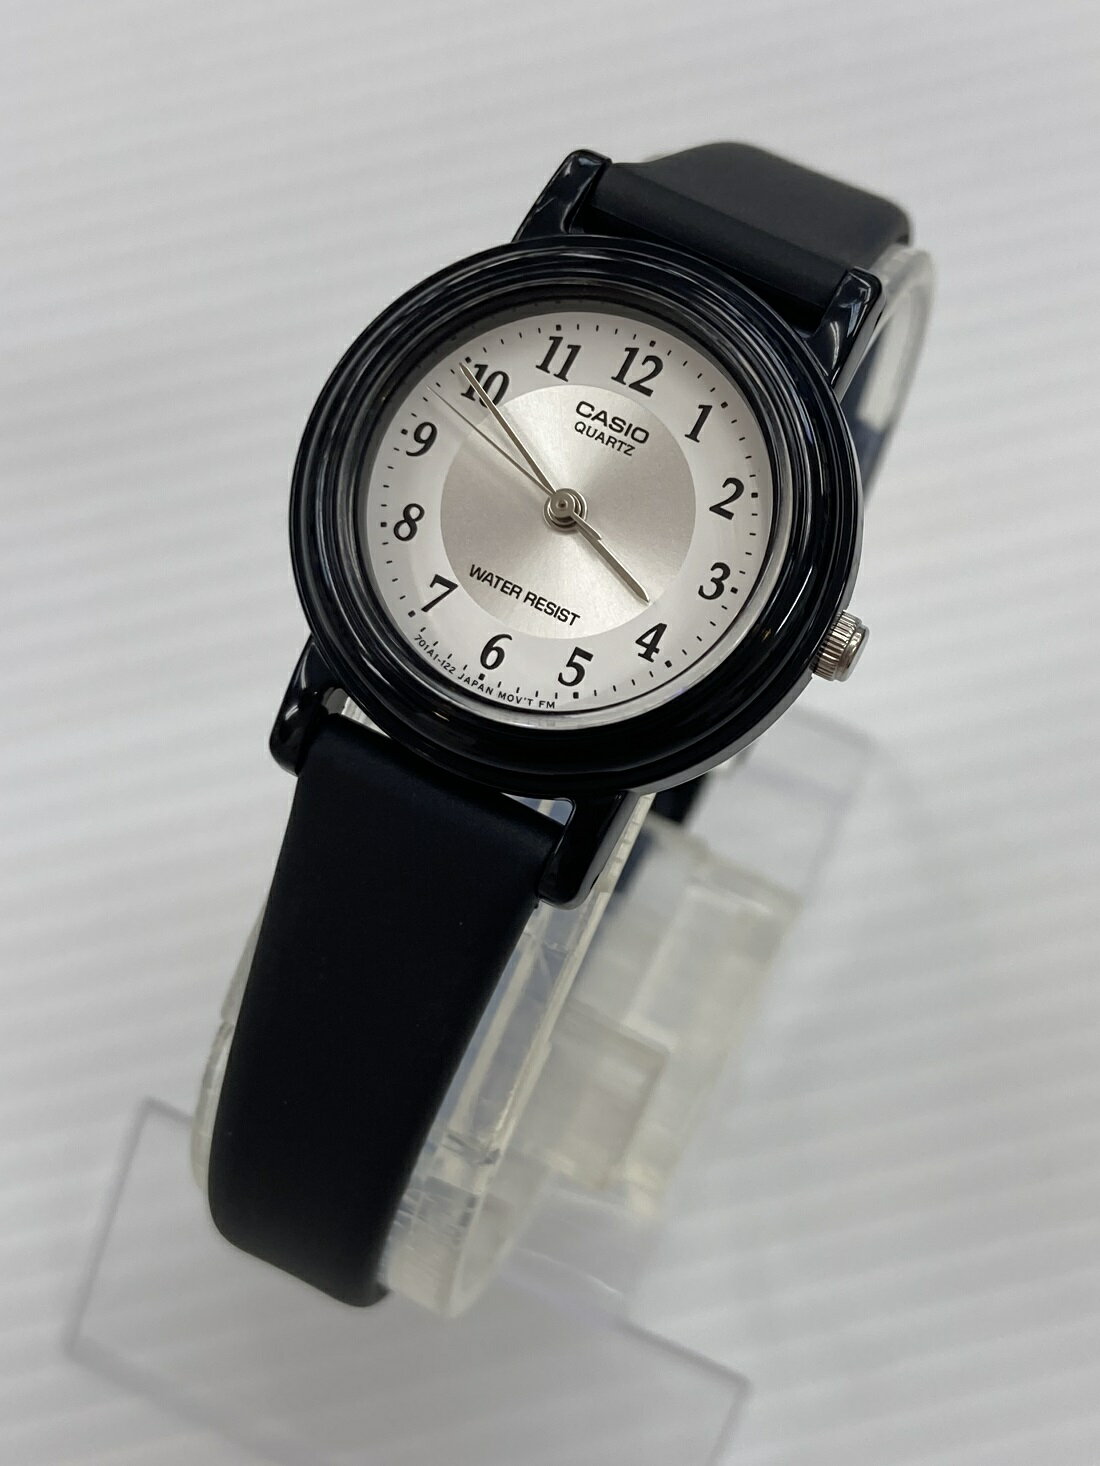 【メール便対象商品】 CASIO 腕時計 レディースアナログ LQ-139AMV-7B3LWJH カシオコレクション